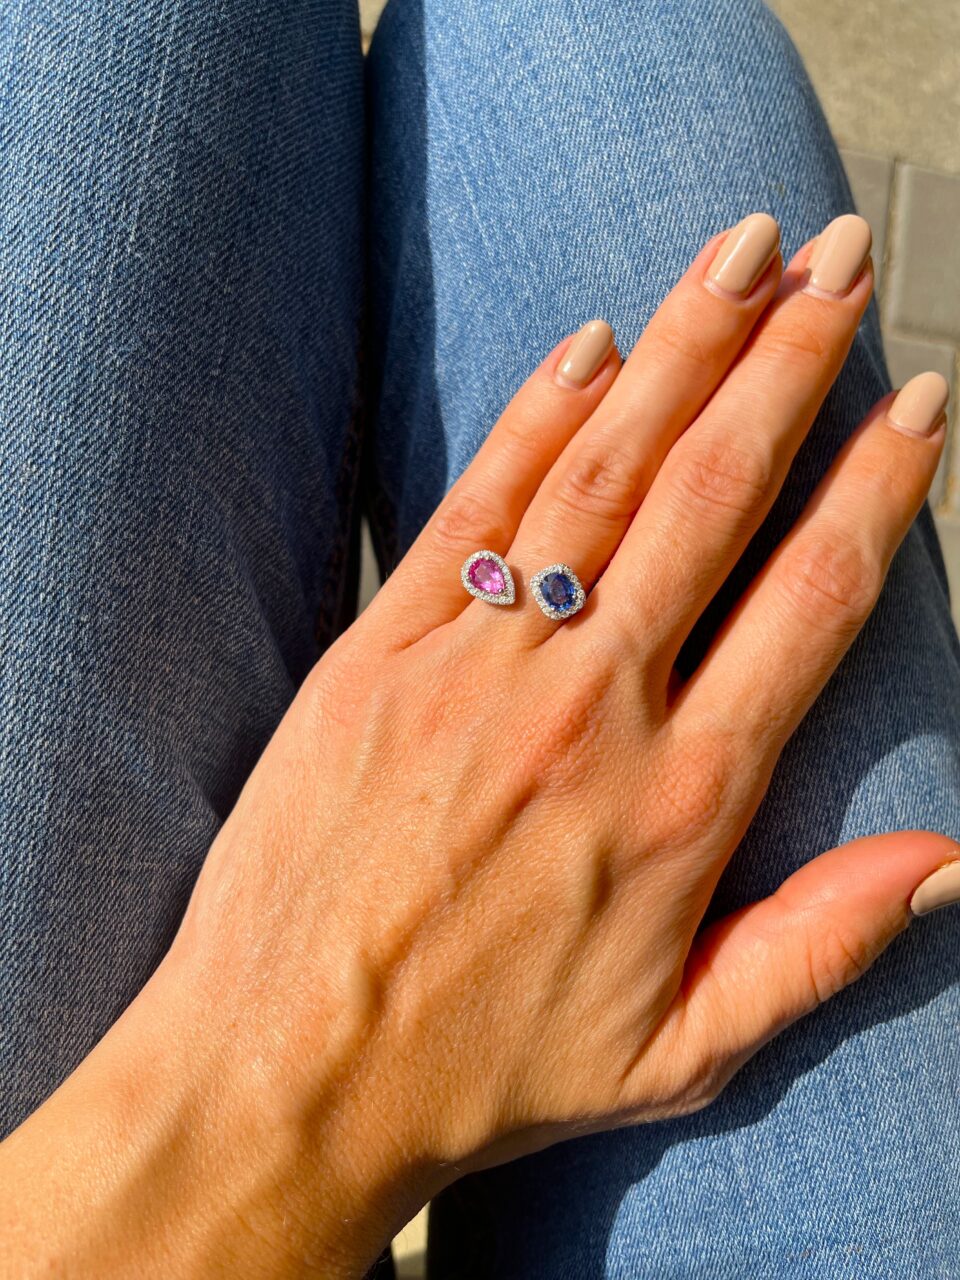 תכשיטי בר-דור טבעת סוכריות מזהב לבן 18 קראט משובצת יהלומים ואבני ספיר ורודה וכחולה